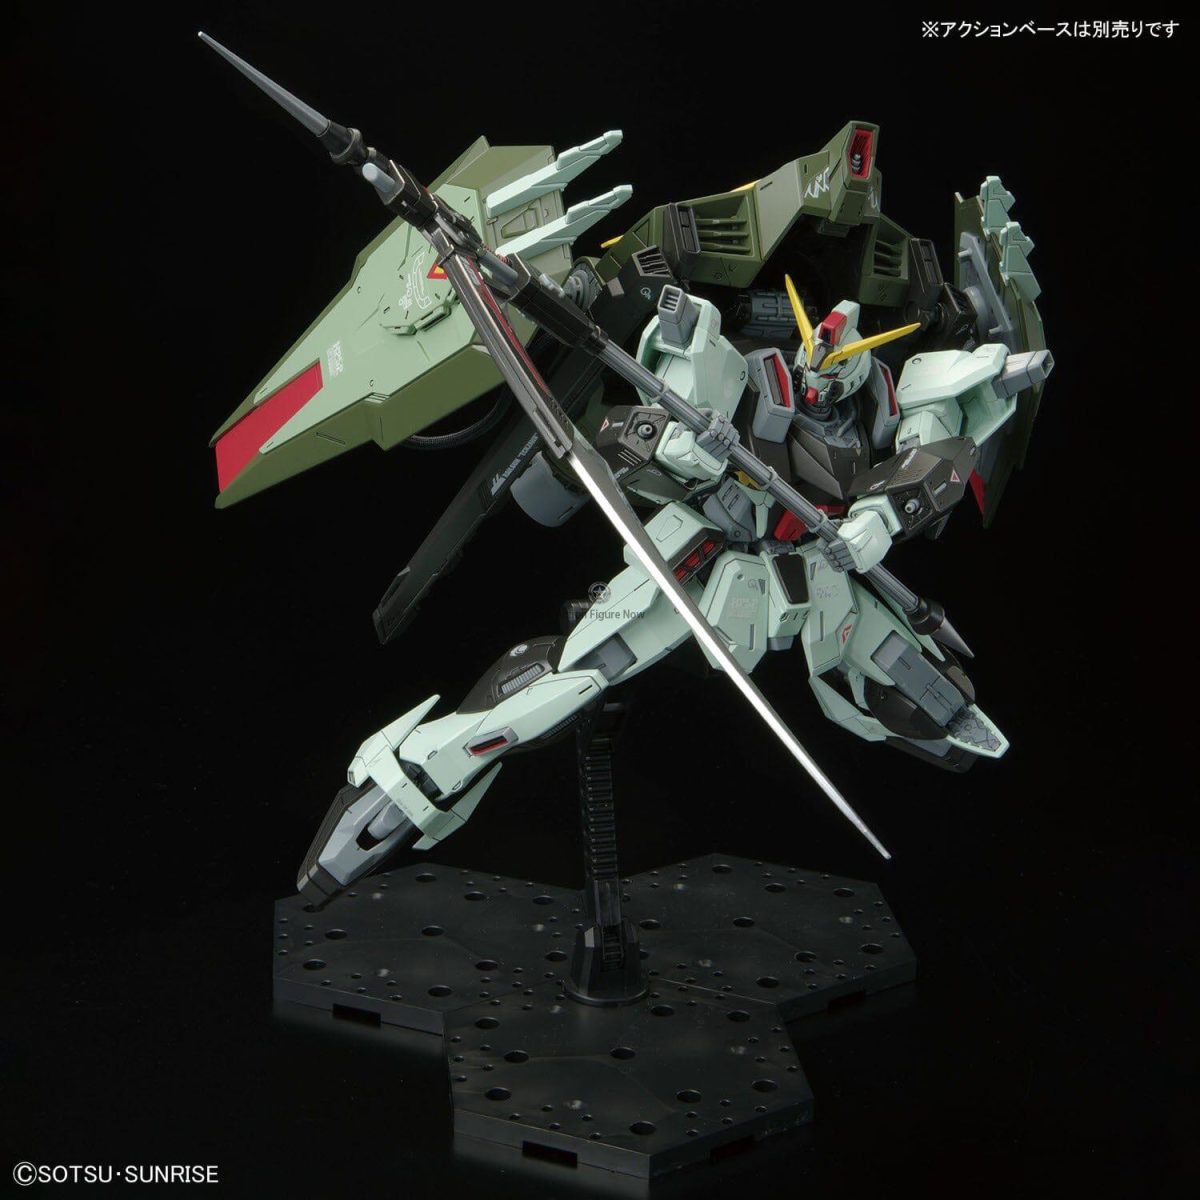 Forbidden Gundam Full Mechanics 1/100 Scale Model Kit